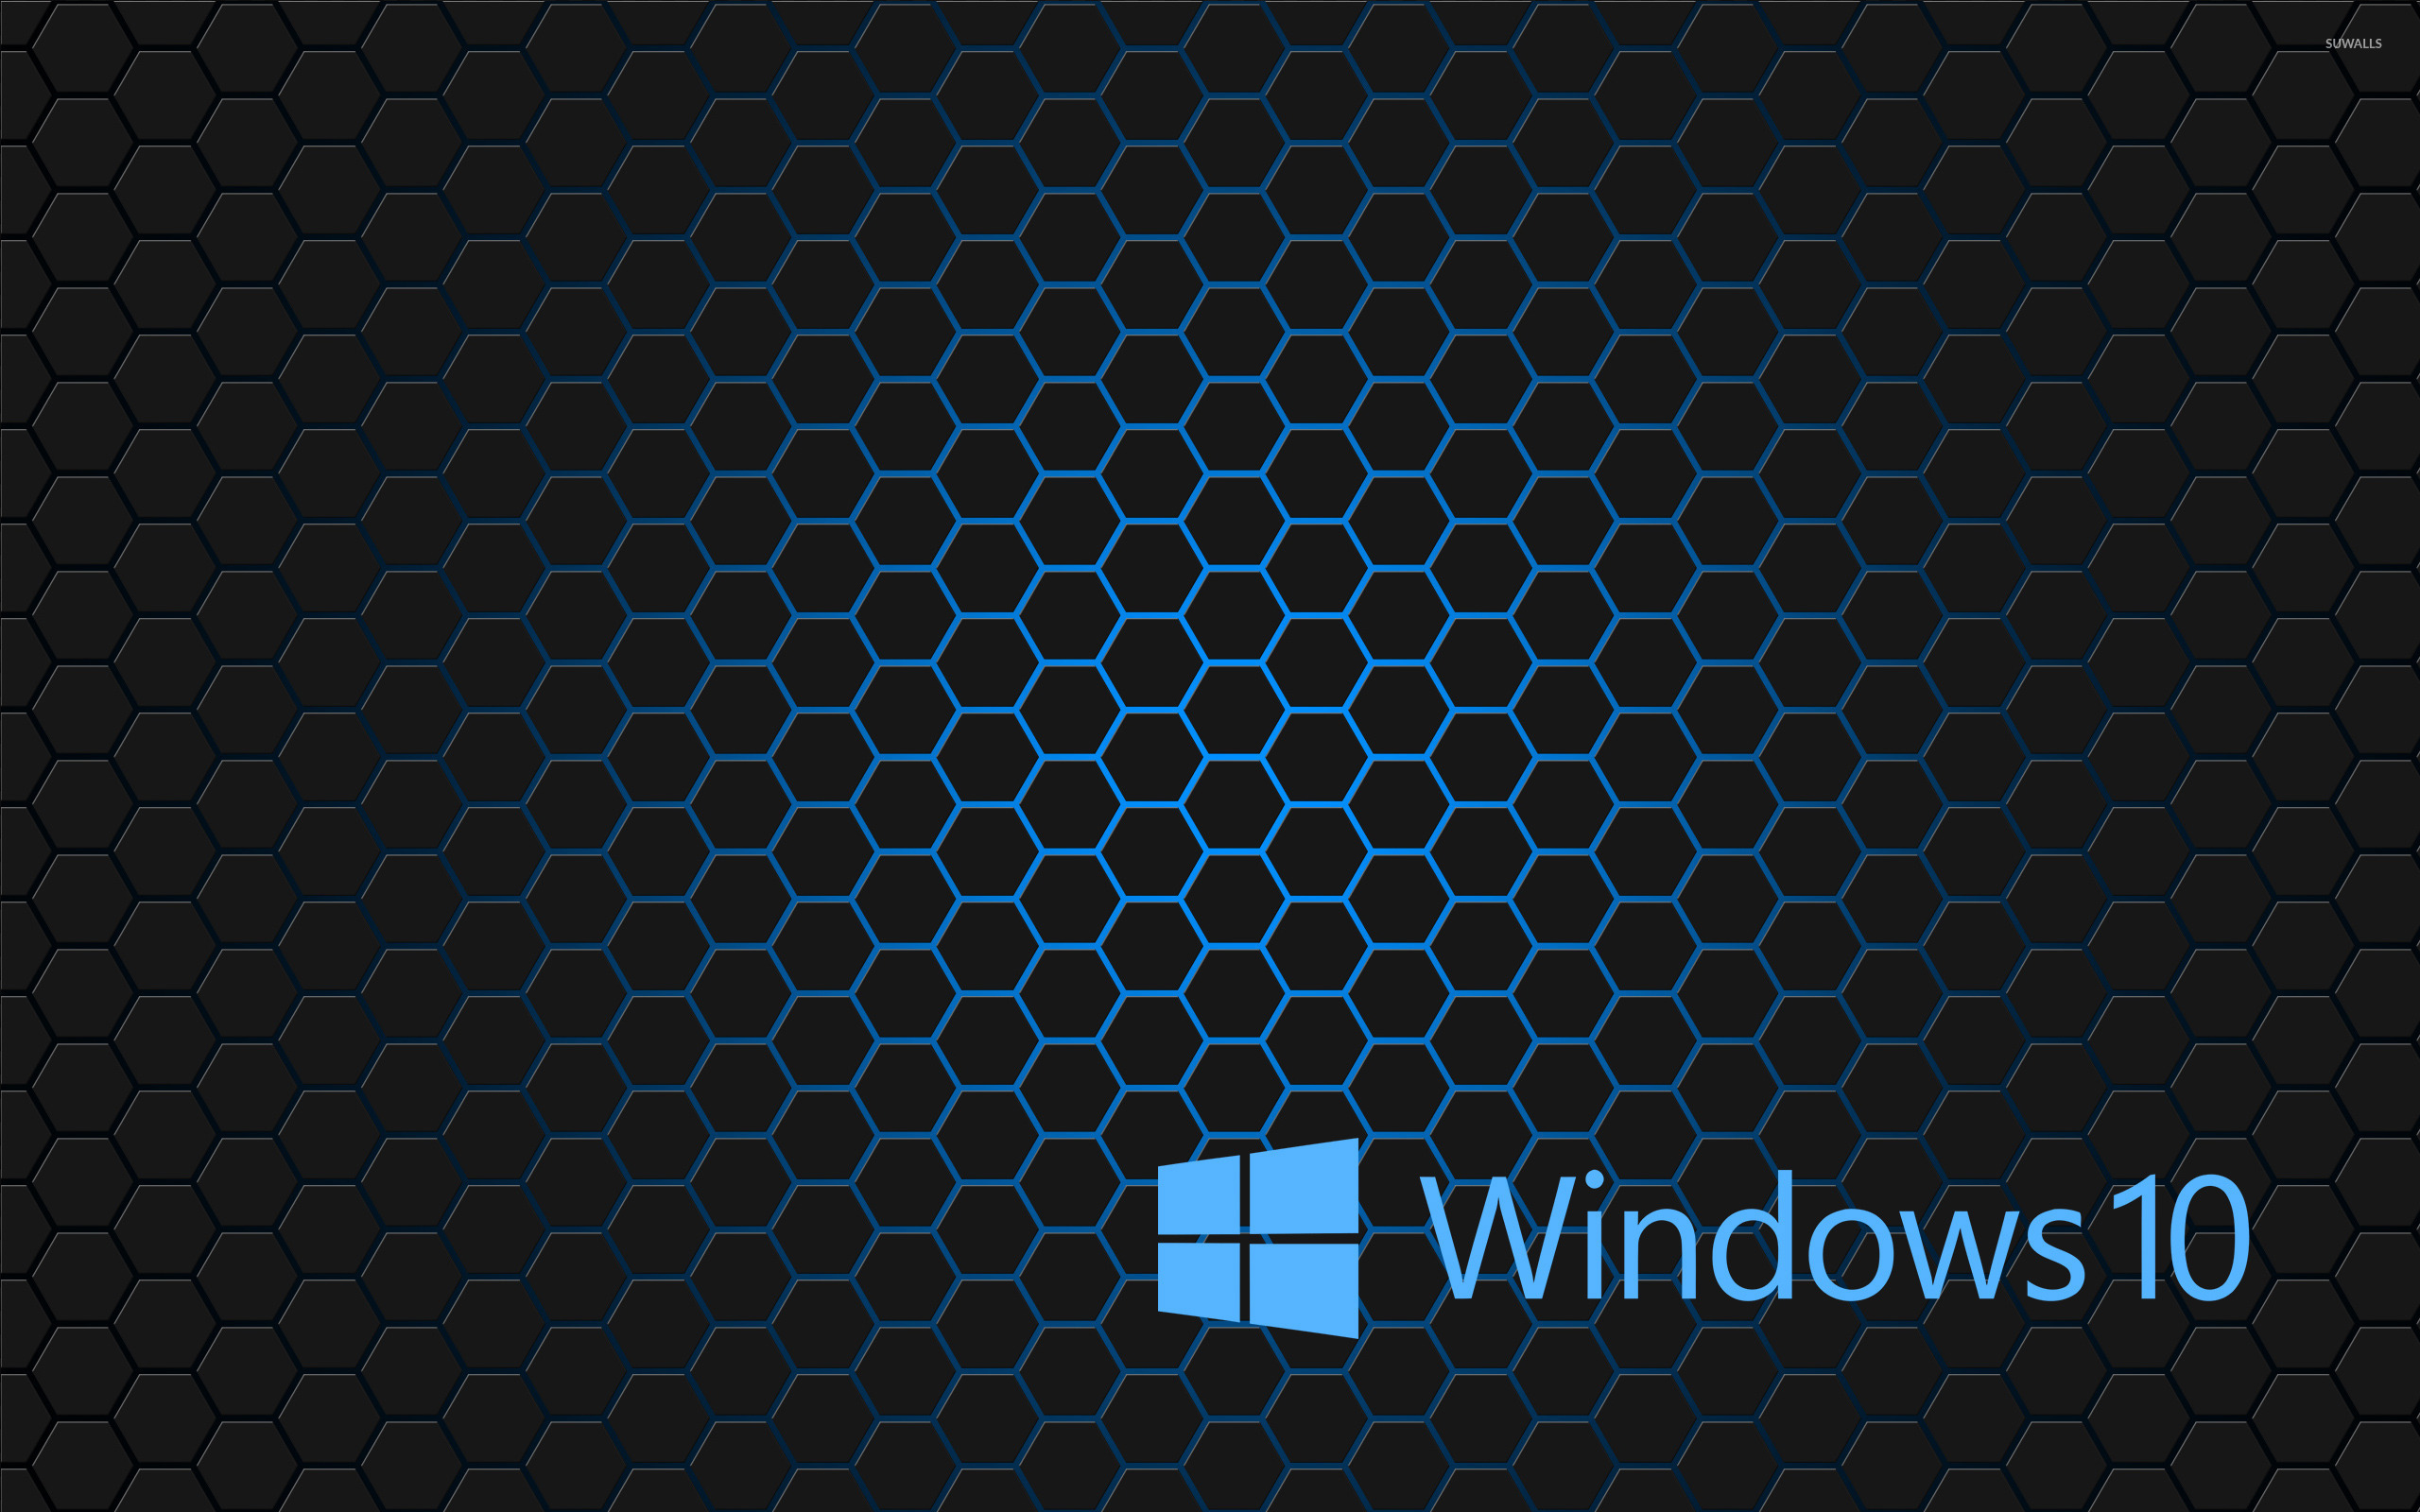 Windows 10 blue text logo on hexagons wallpaper   Computer wallpapers